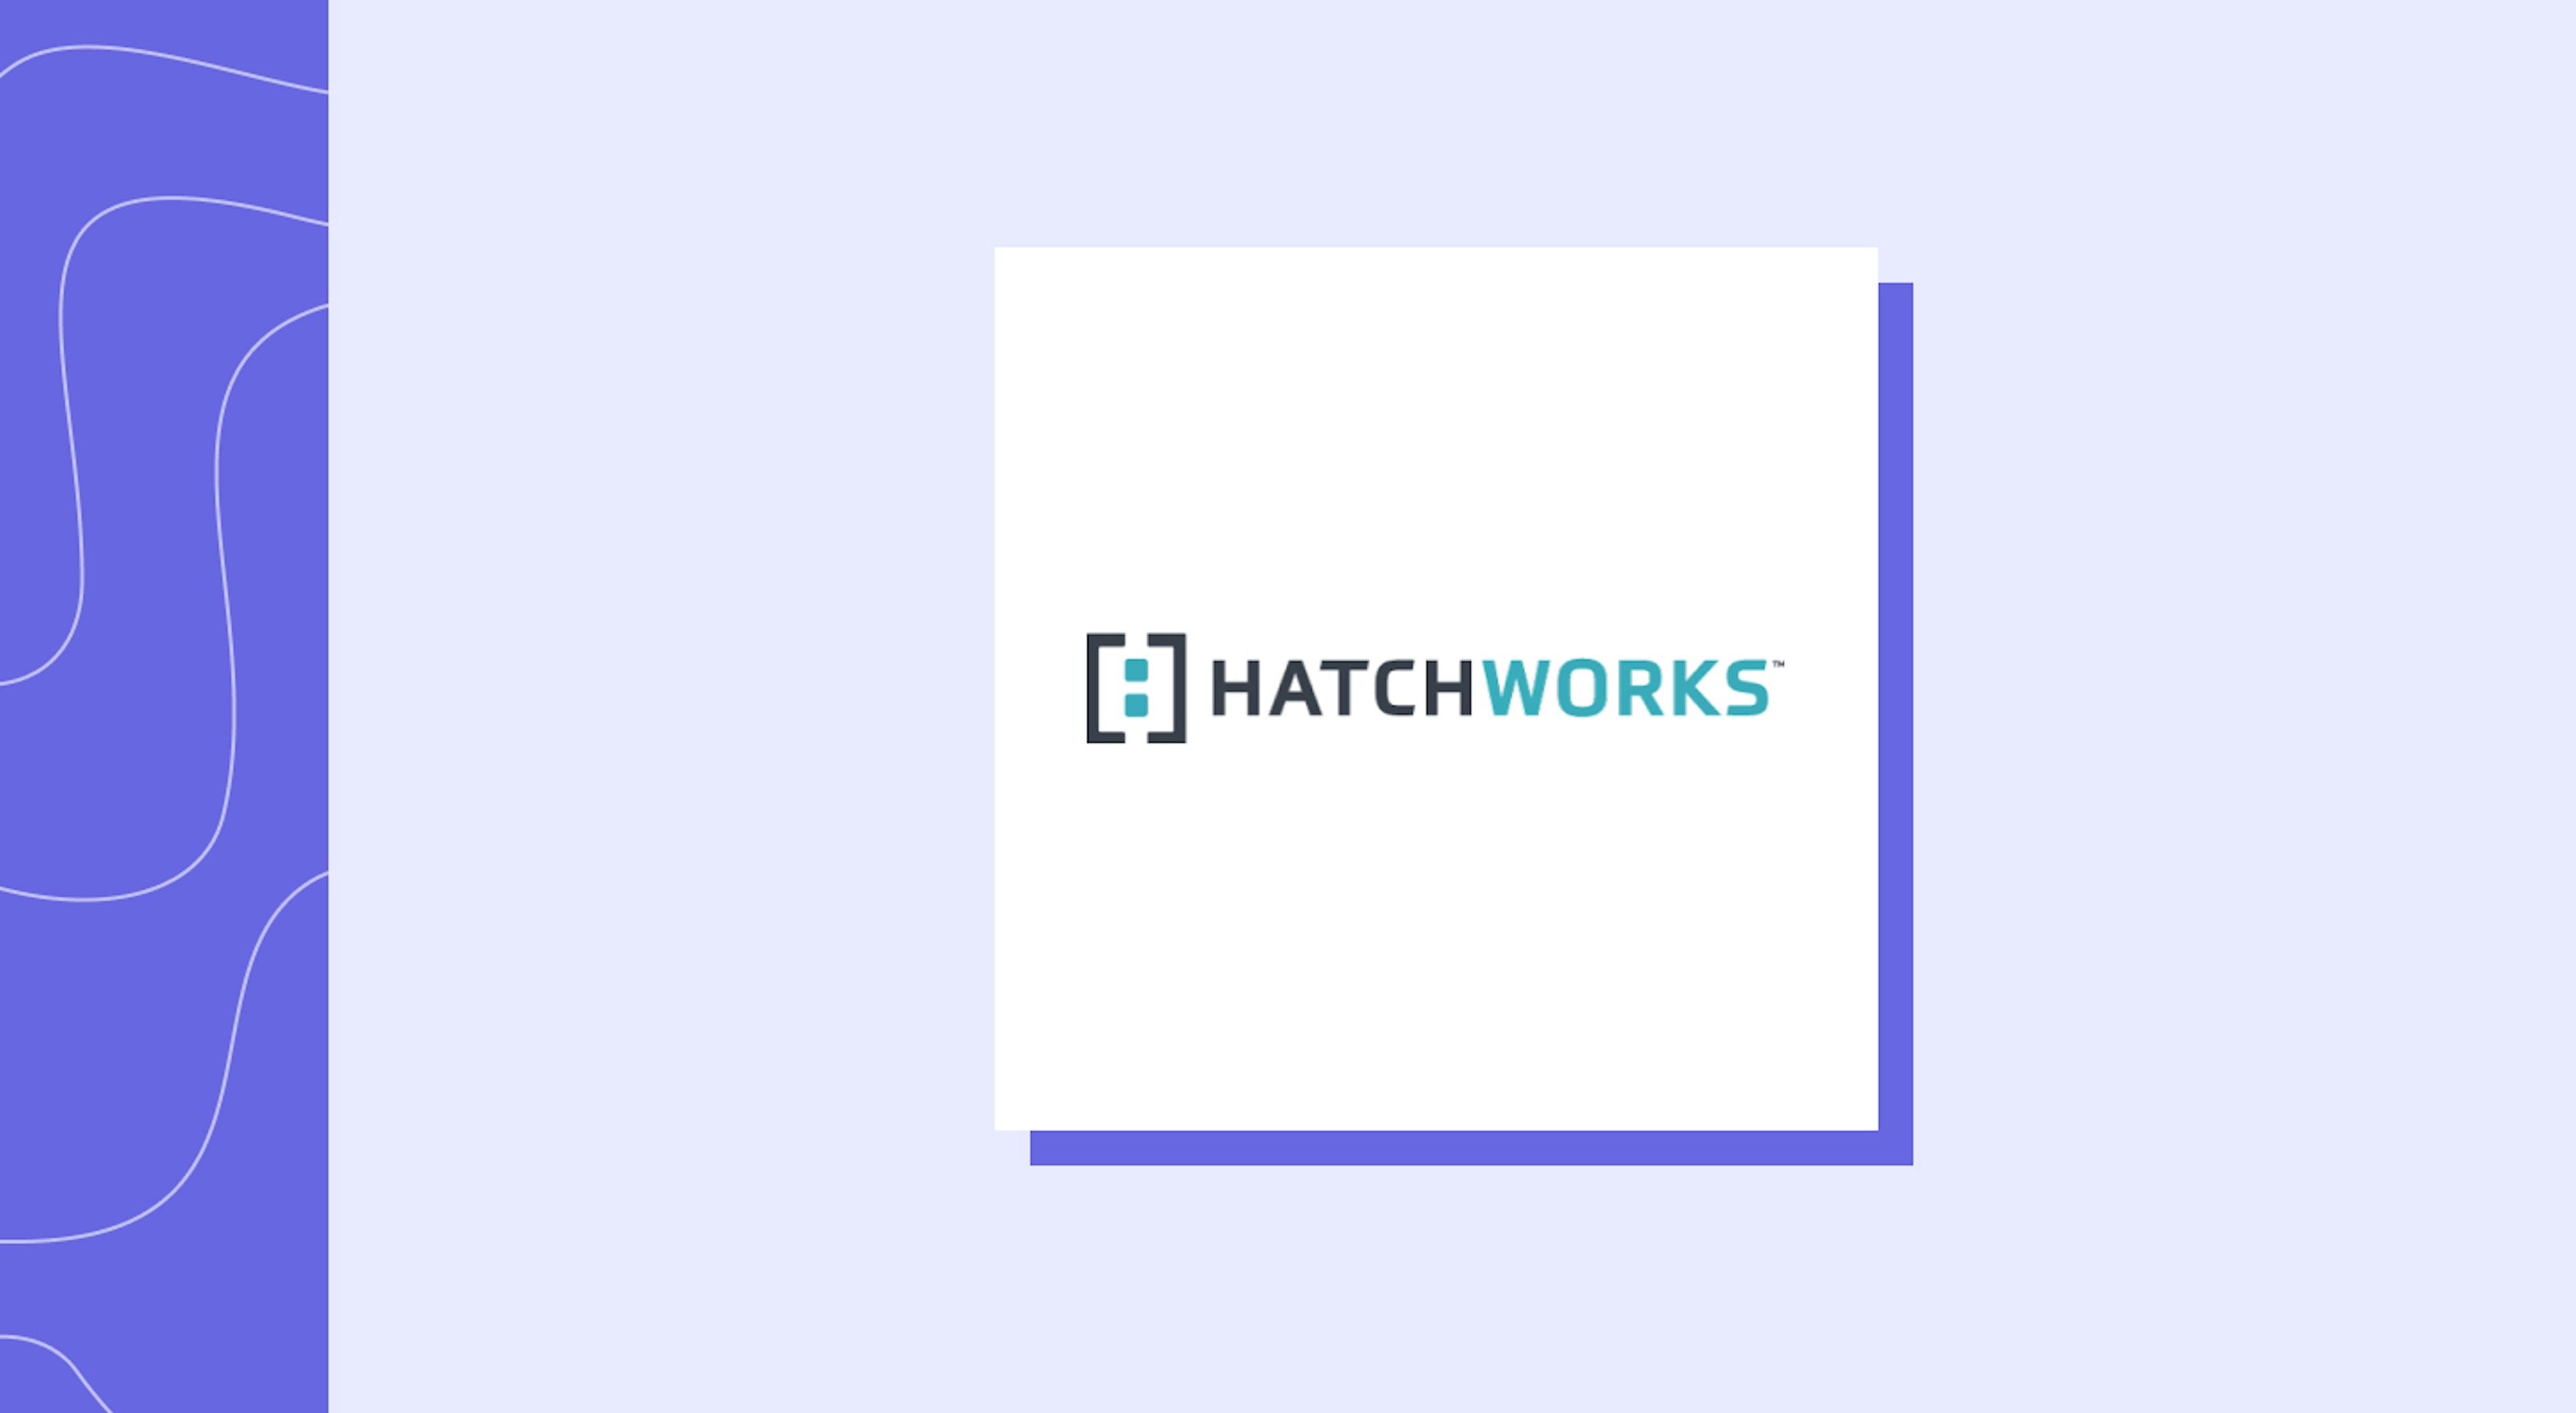 HatchWorks